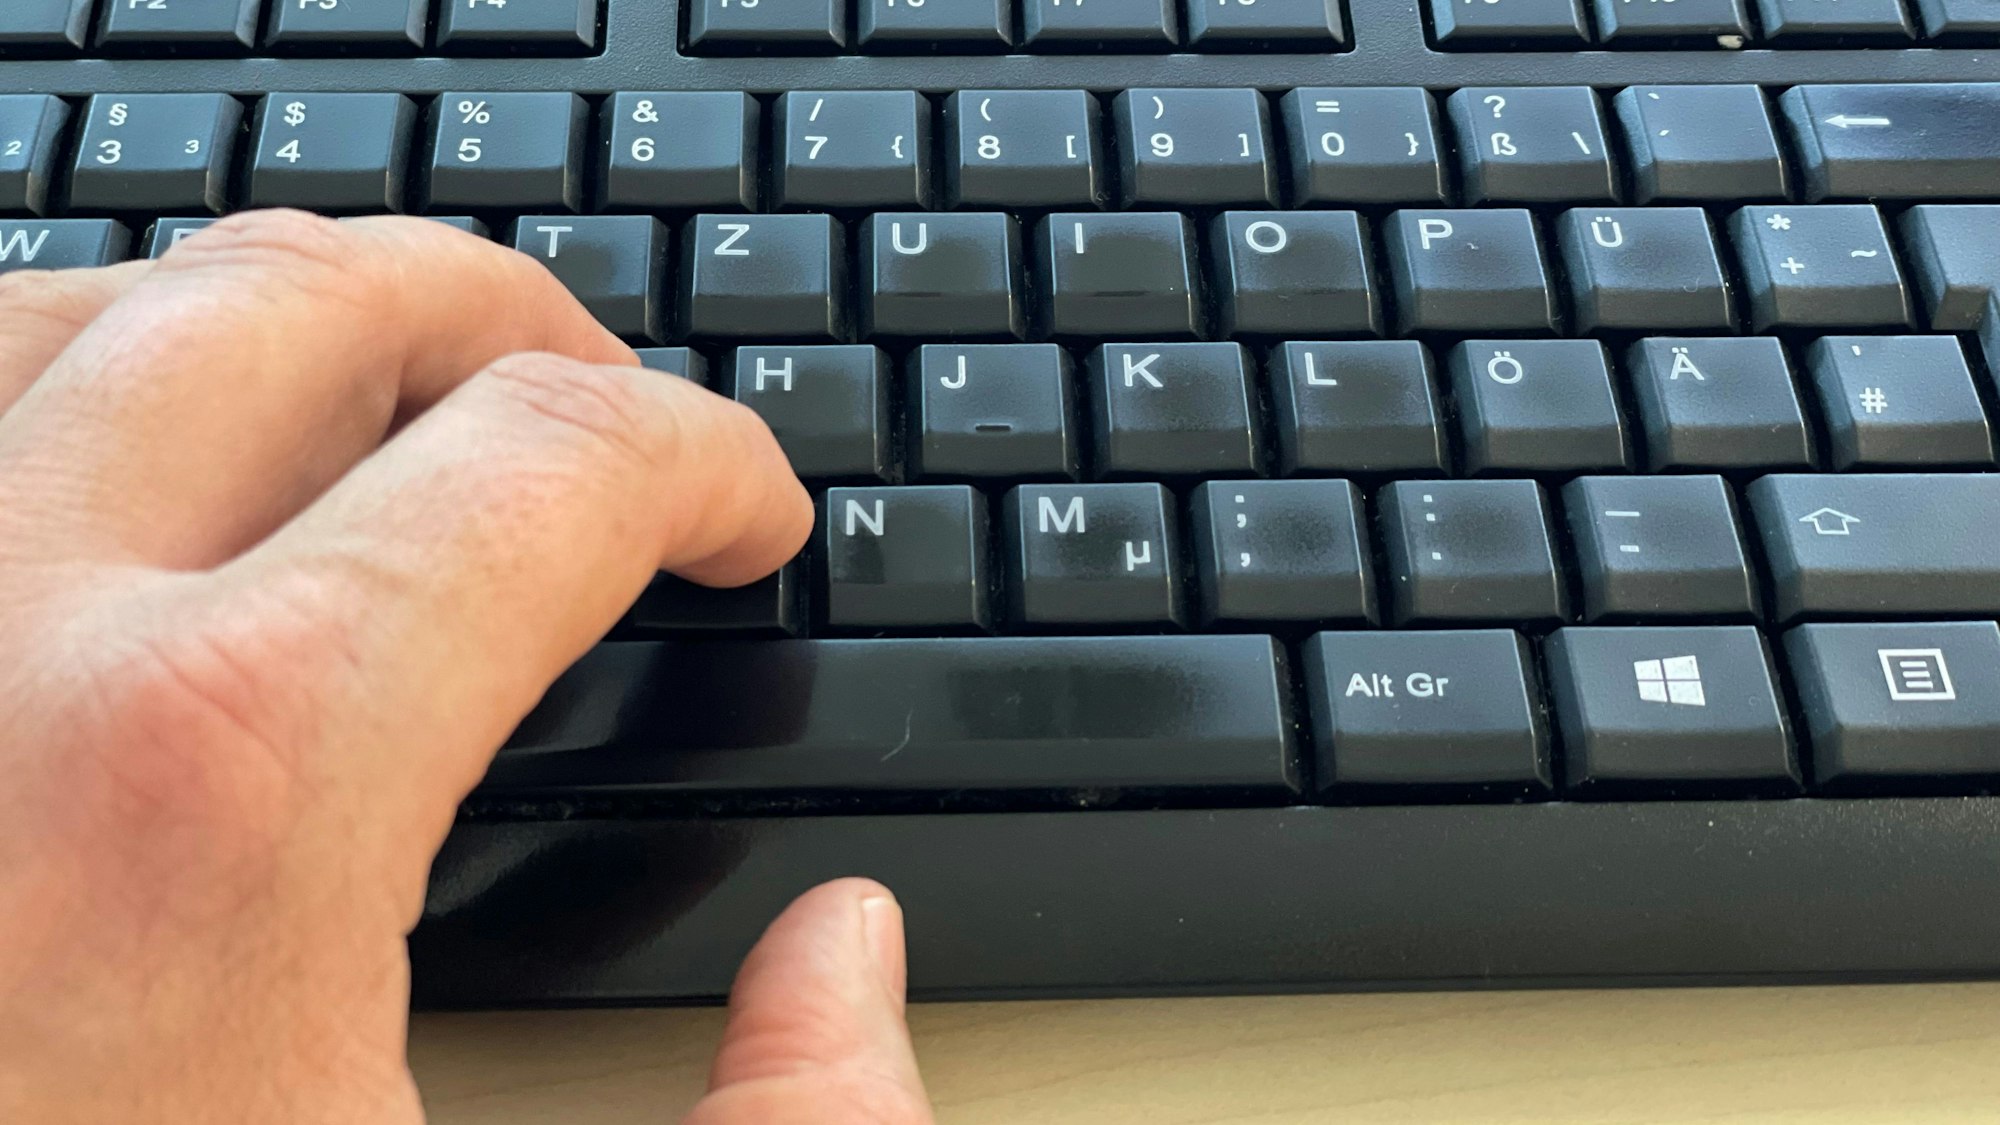 Das Bild zeigt eine Hand auf einer Computer-Tastatur.